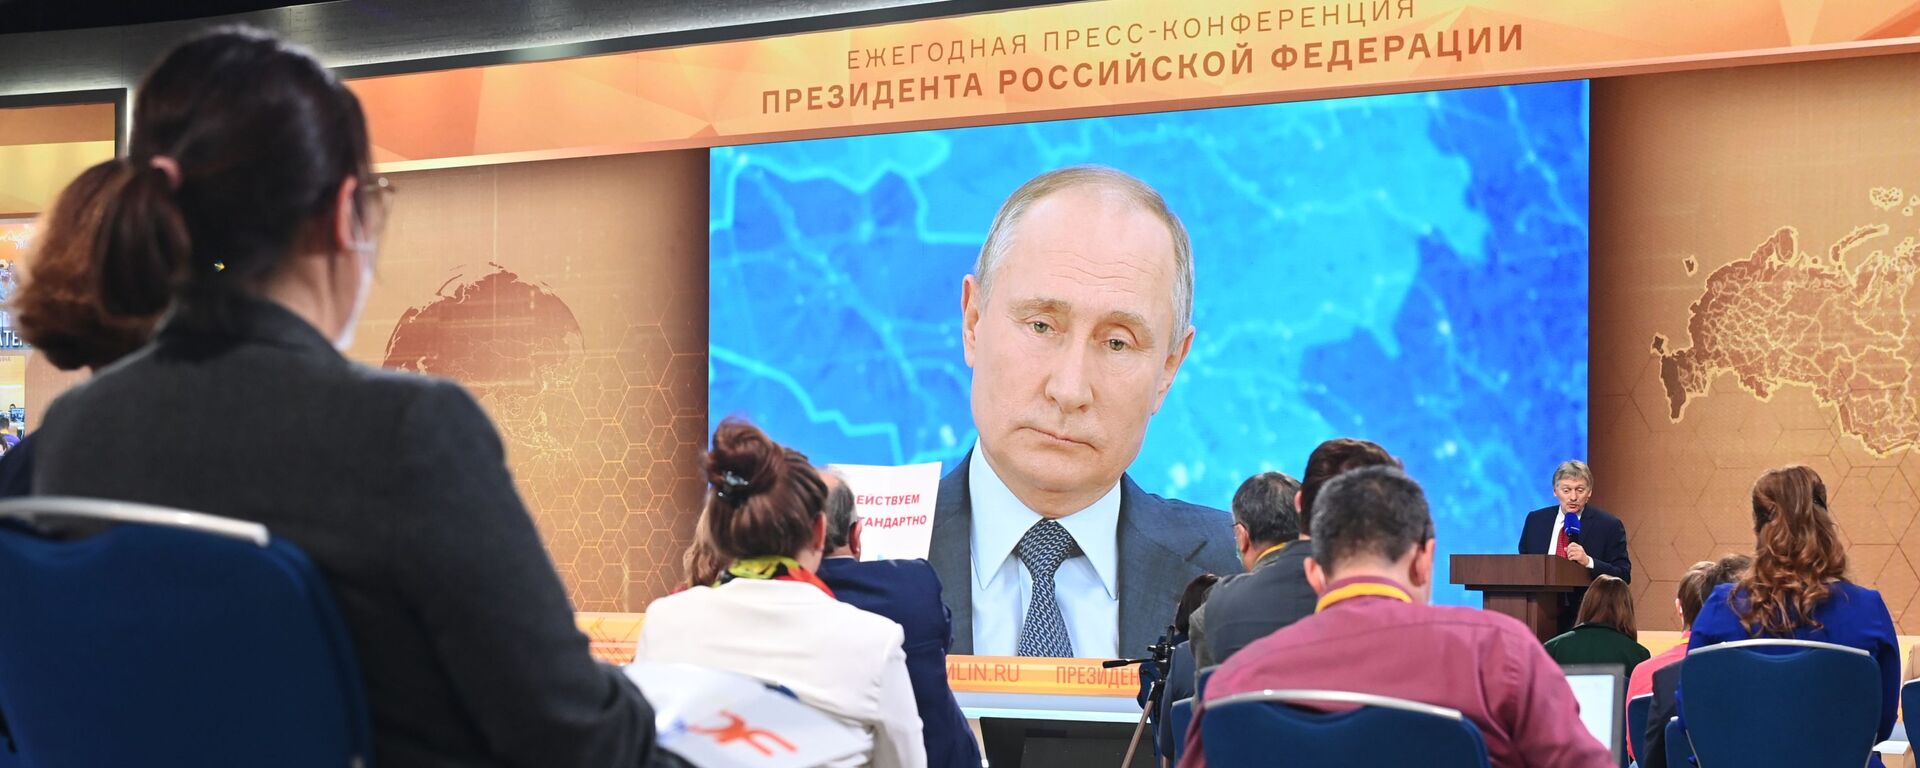 Президент России Владимир Путин участвует в ежегодной пресс-конференции в режиме видеоконференции, 17 декабря 2020 - Sputnik Латвия, 1920, 17.12.2020